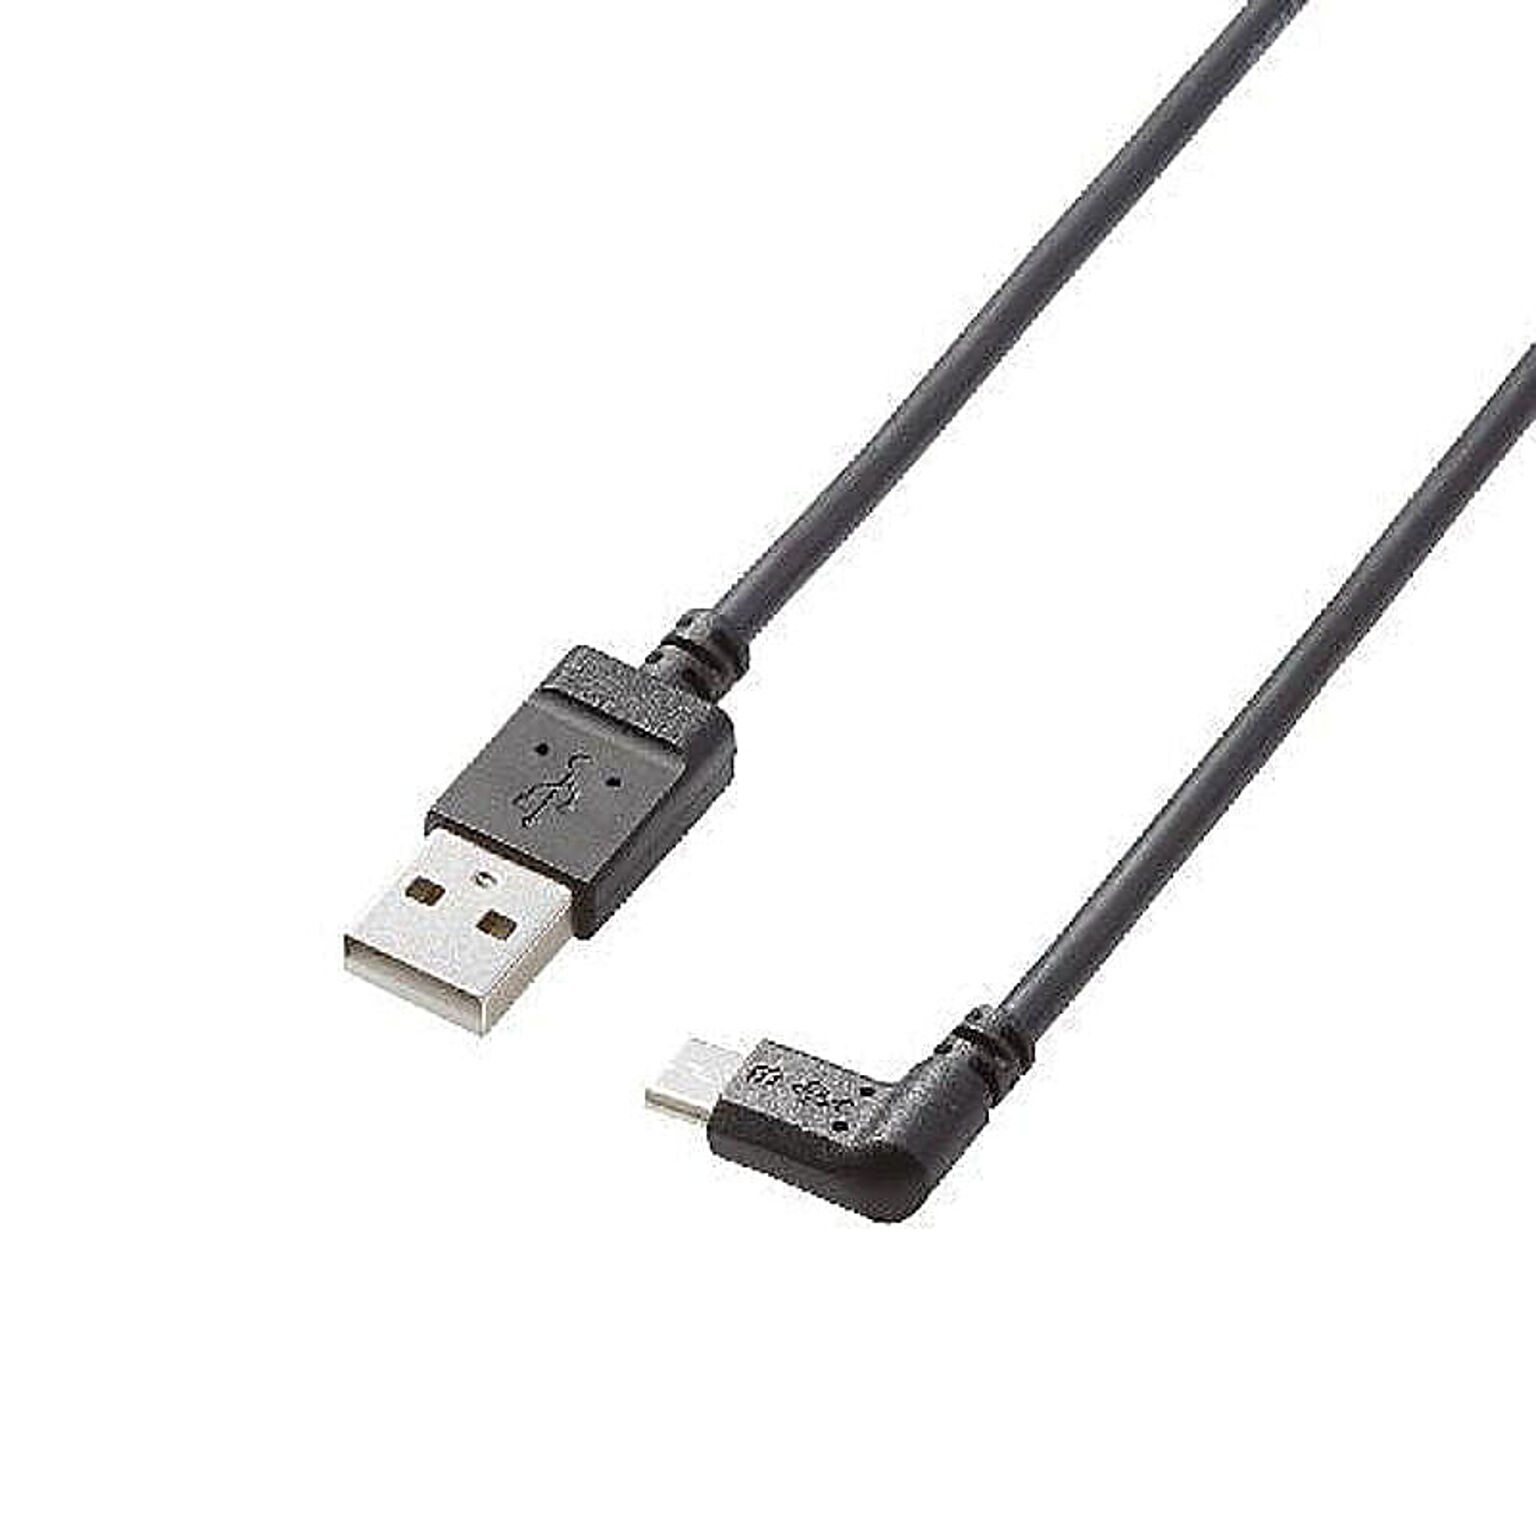 エレコム micro-USBケーブル(L字右側接続タイプ) TB-AMBXR2U12BK 管理No. 4953103488045